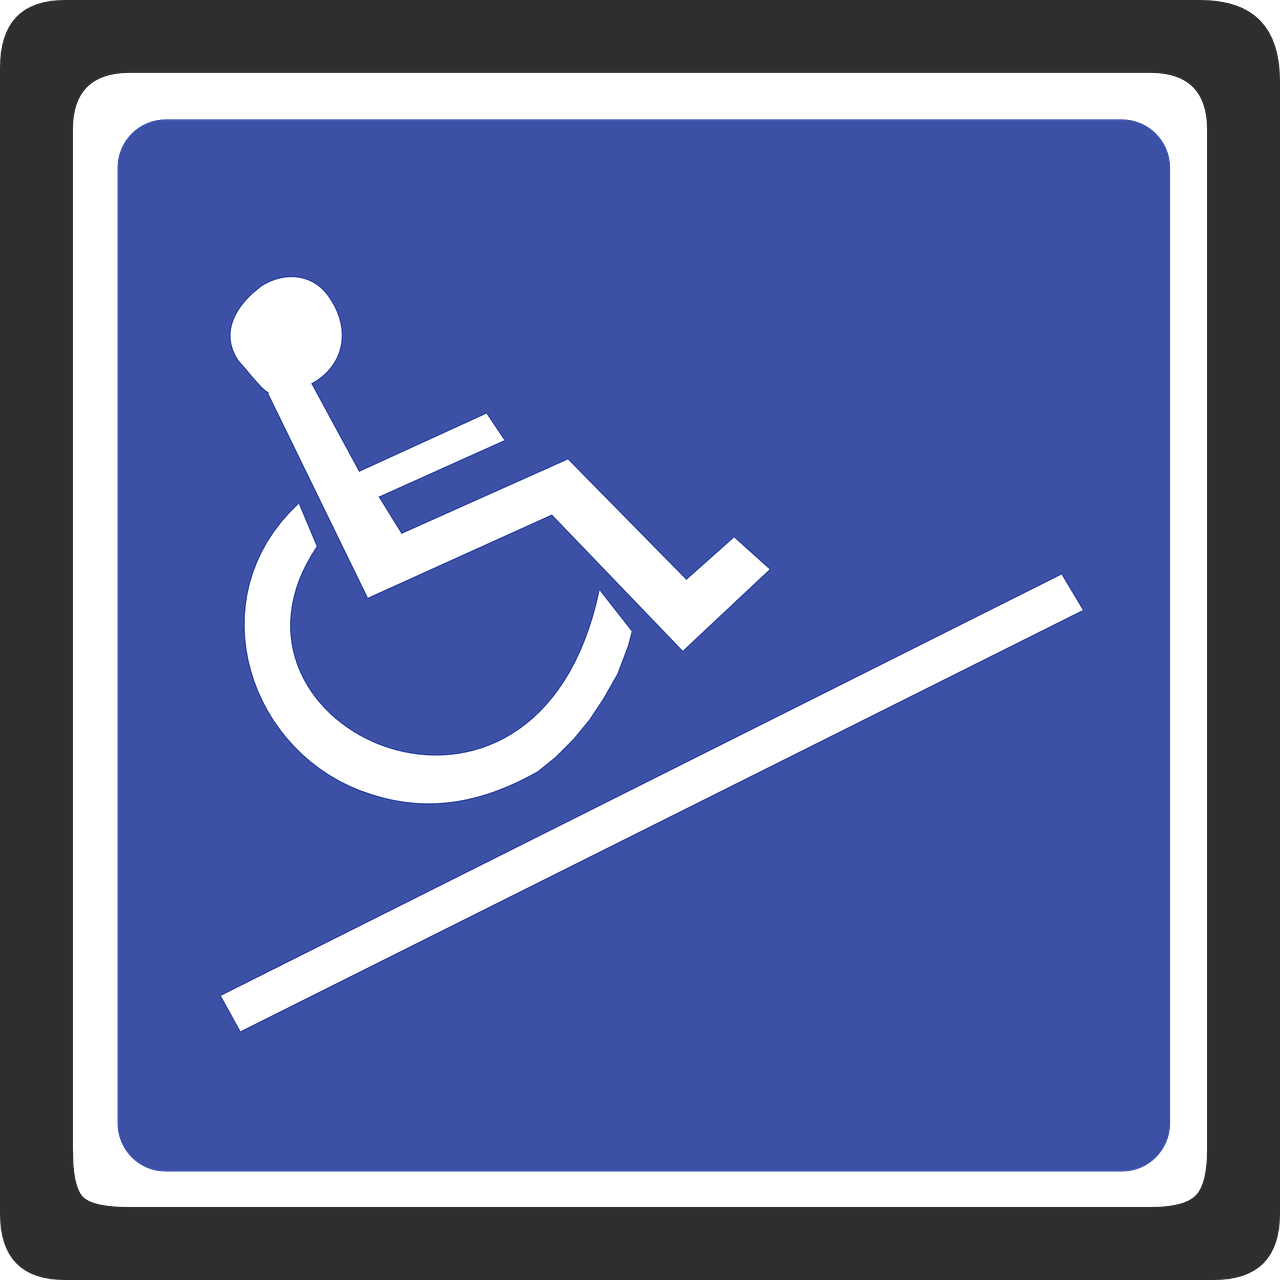 Zorgzaam Present ervaring instelling gehandicaptenzorg verstandelijk gehandicapten